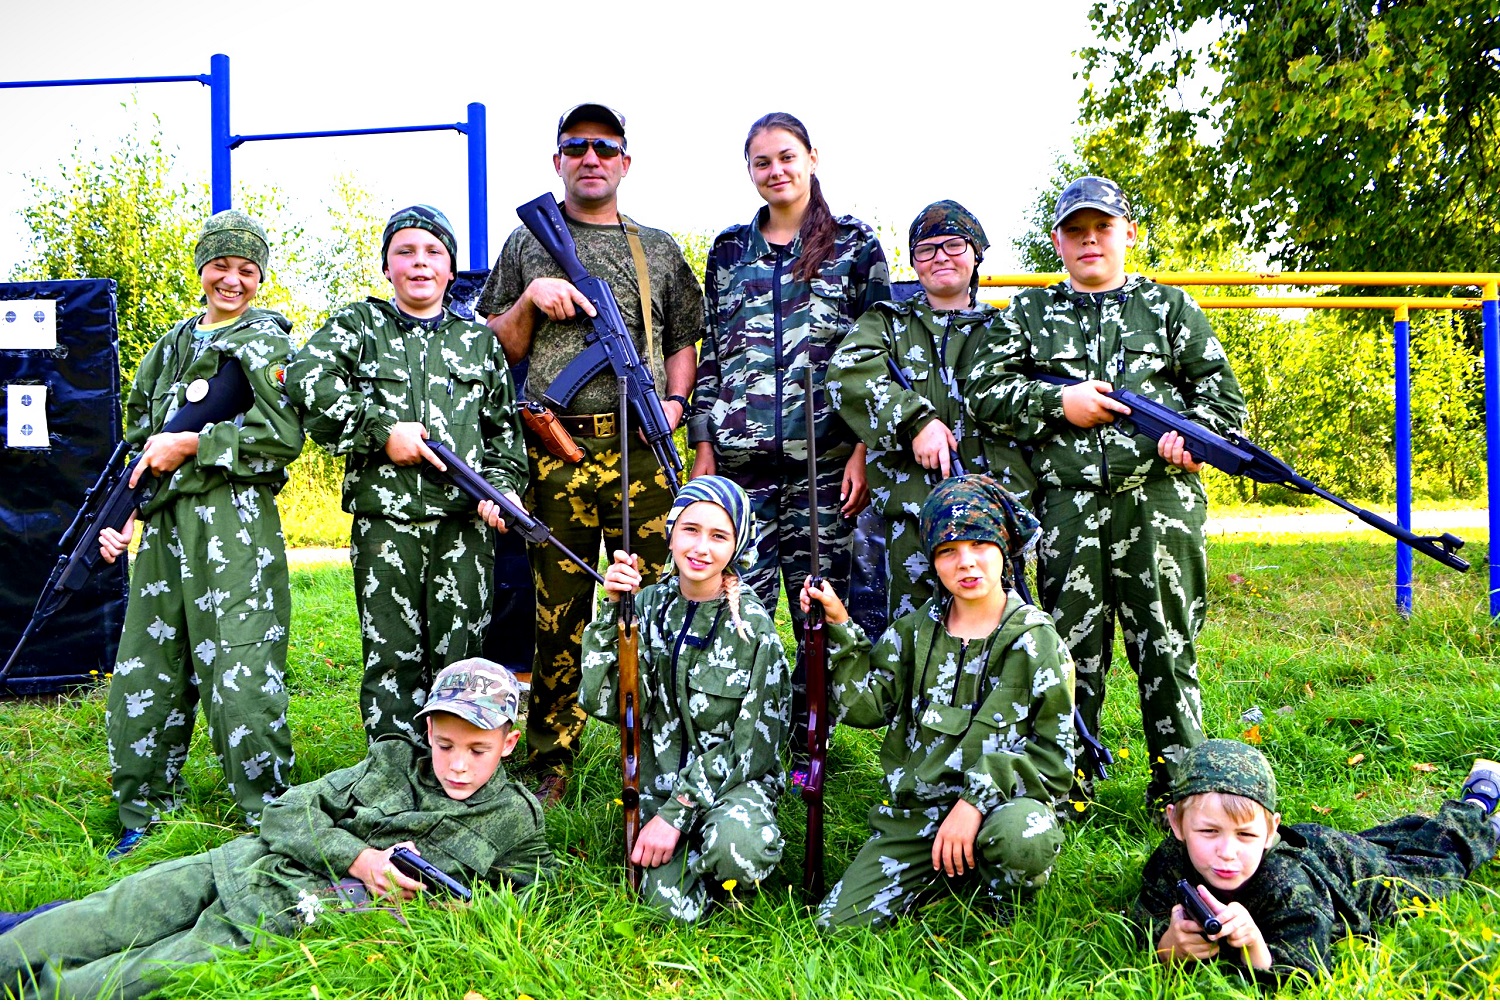 «Вымпел Шторм» – Военно-патриотический лагерь в Подмосковье, фото 1